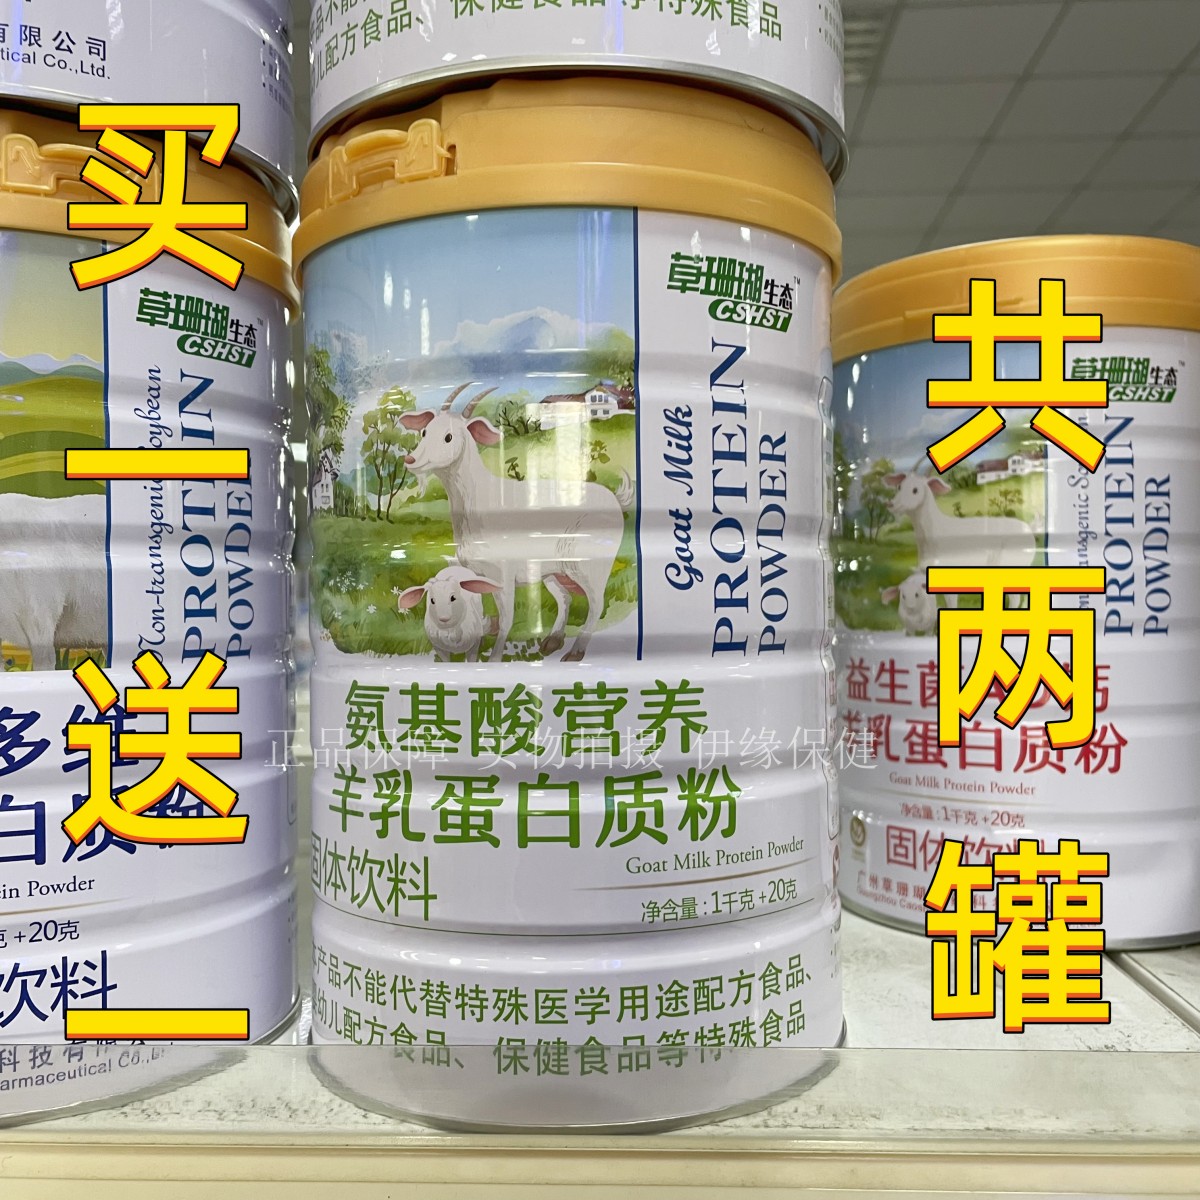 买1罐送1罐 +礼品草珊瑚医药氨基酸营养羊乳蛋白质粉草珊瑚生态